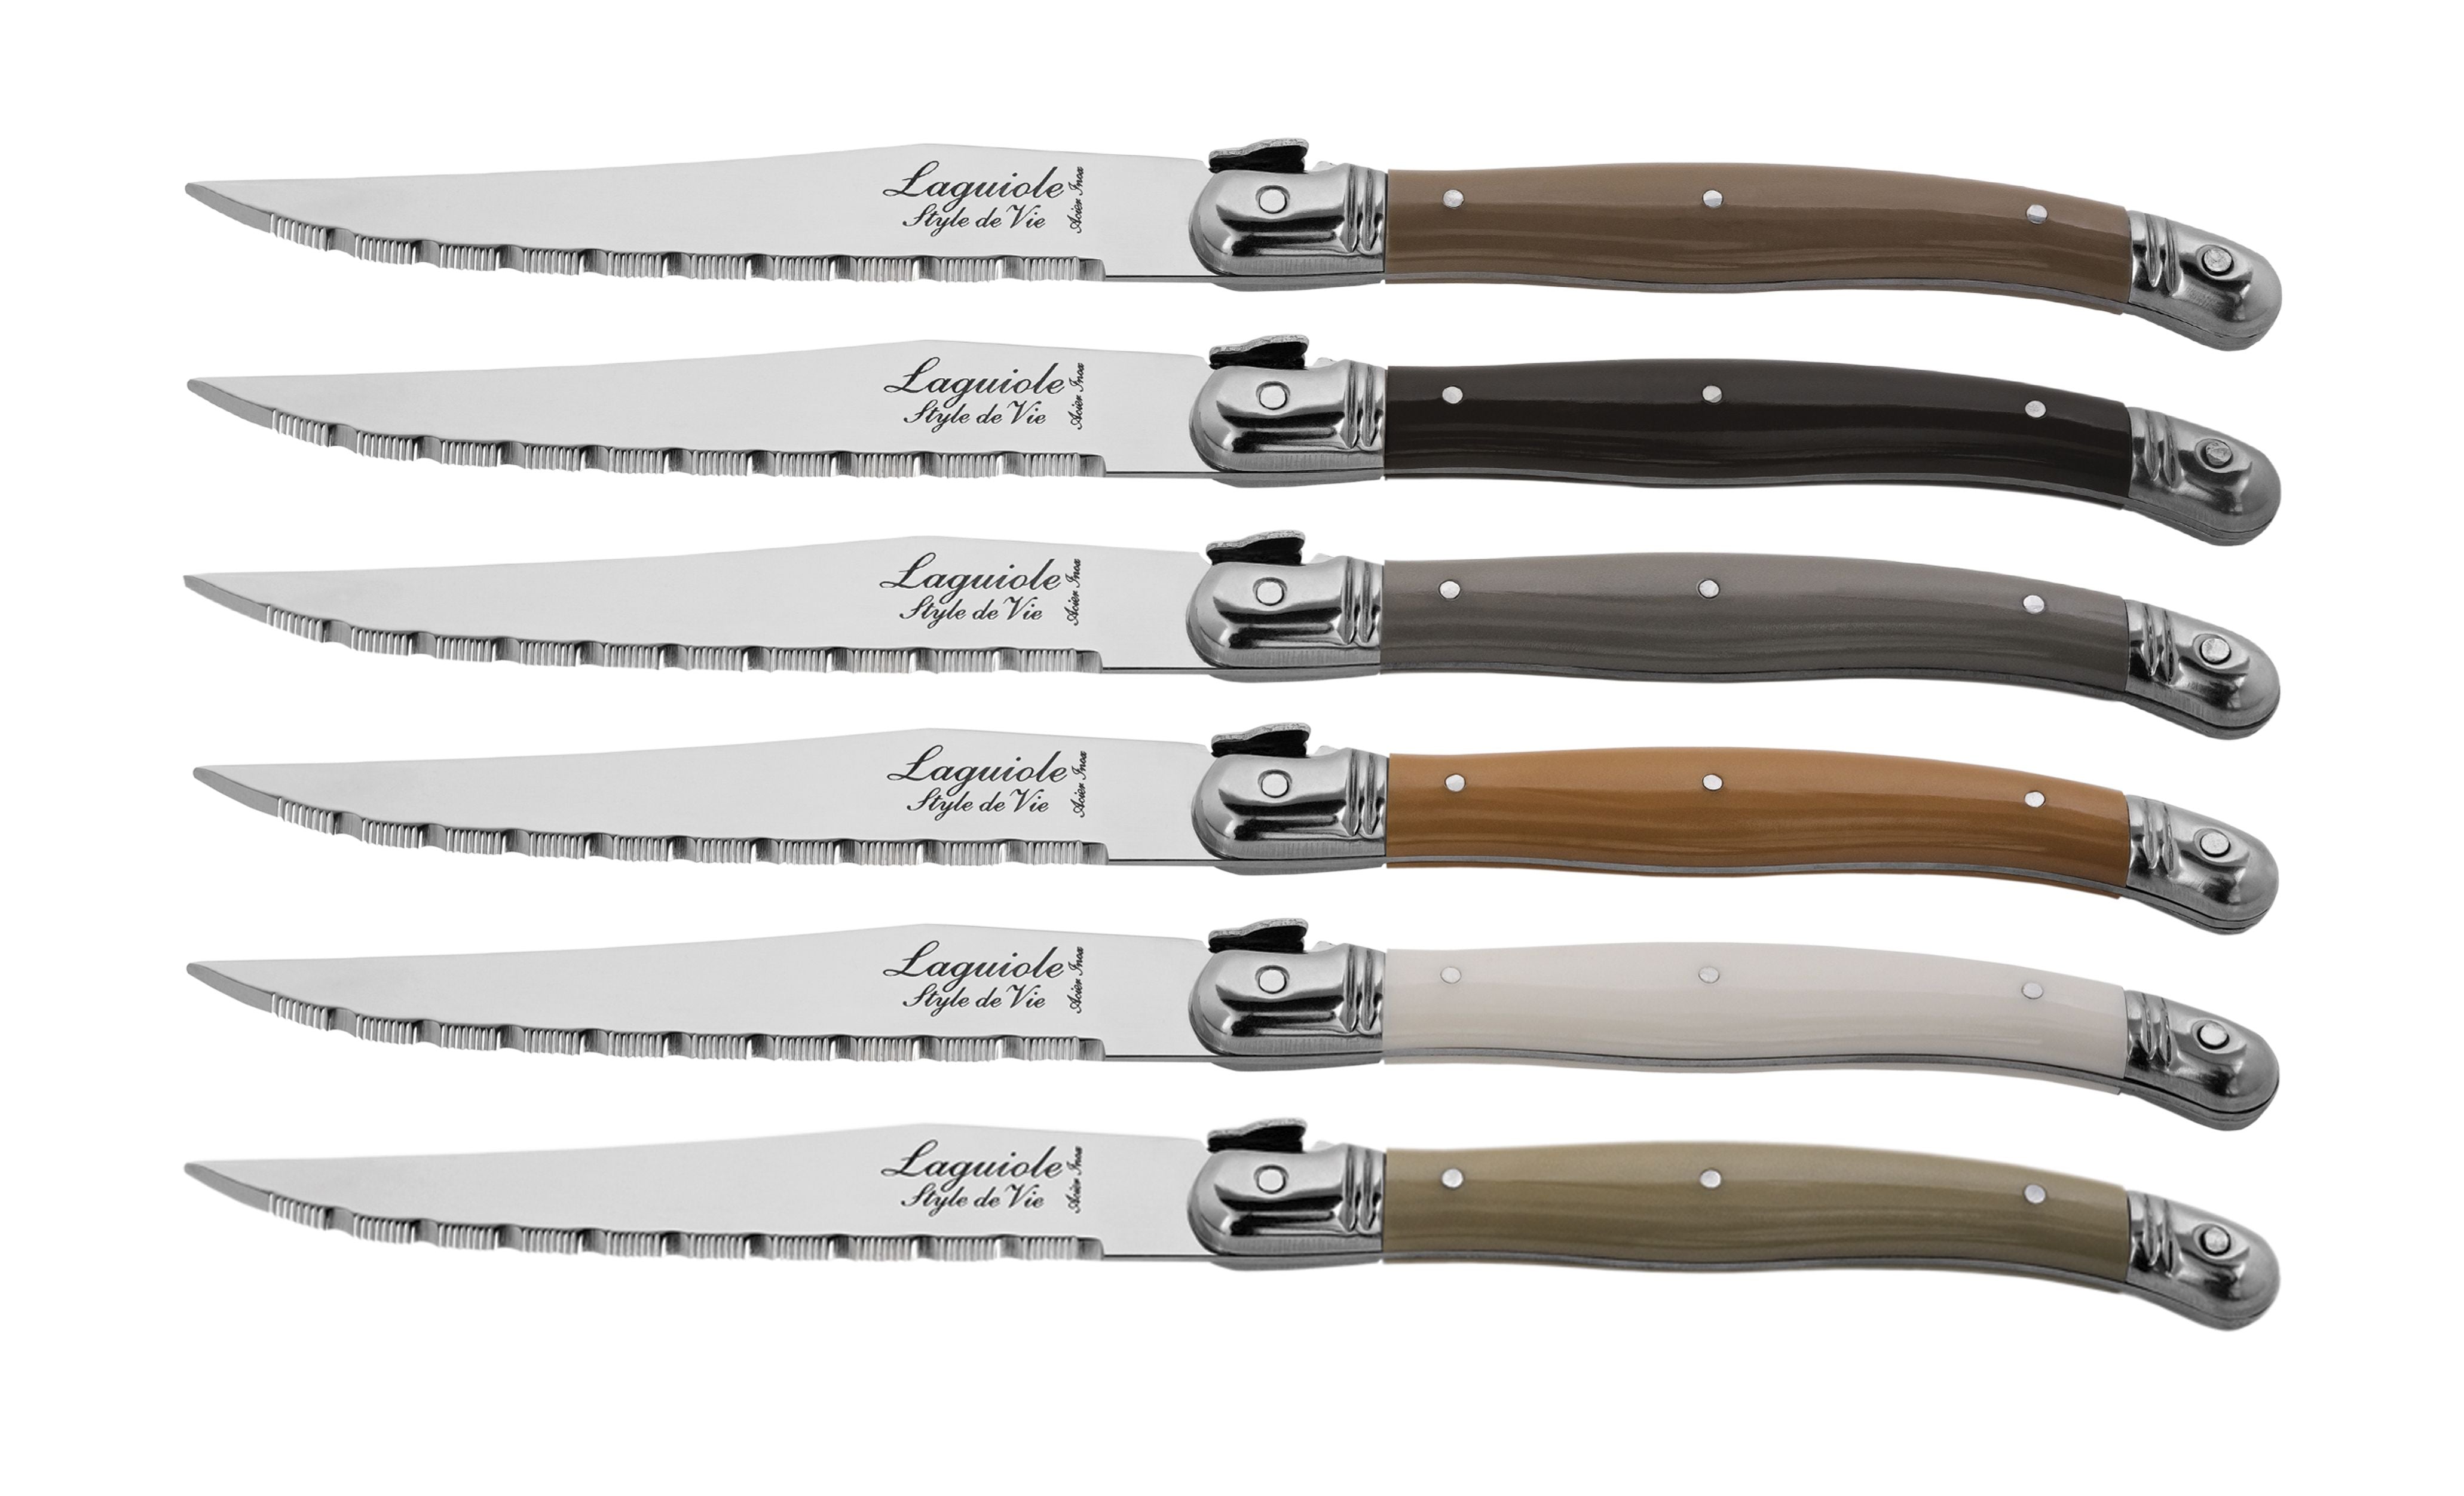 Style de Vie Authentique Laguiole Premium Line Steak Knives de 6 piezas, tesoro